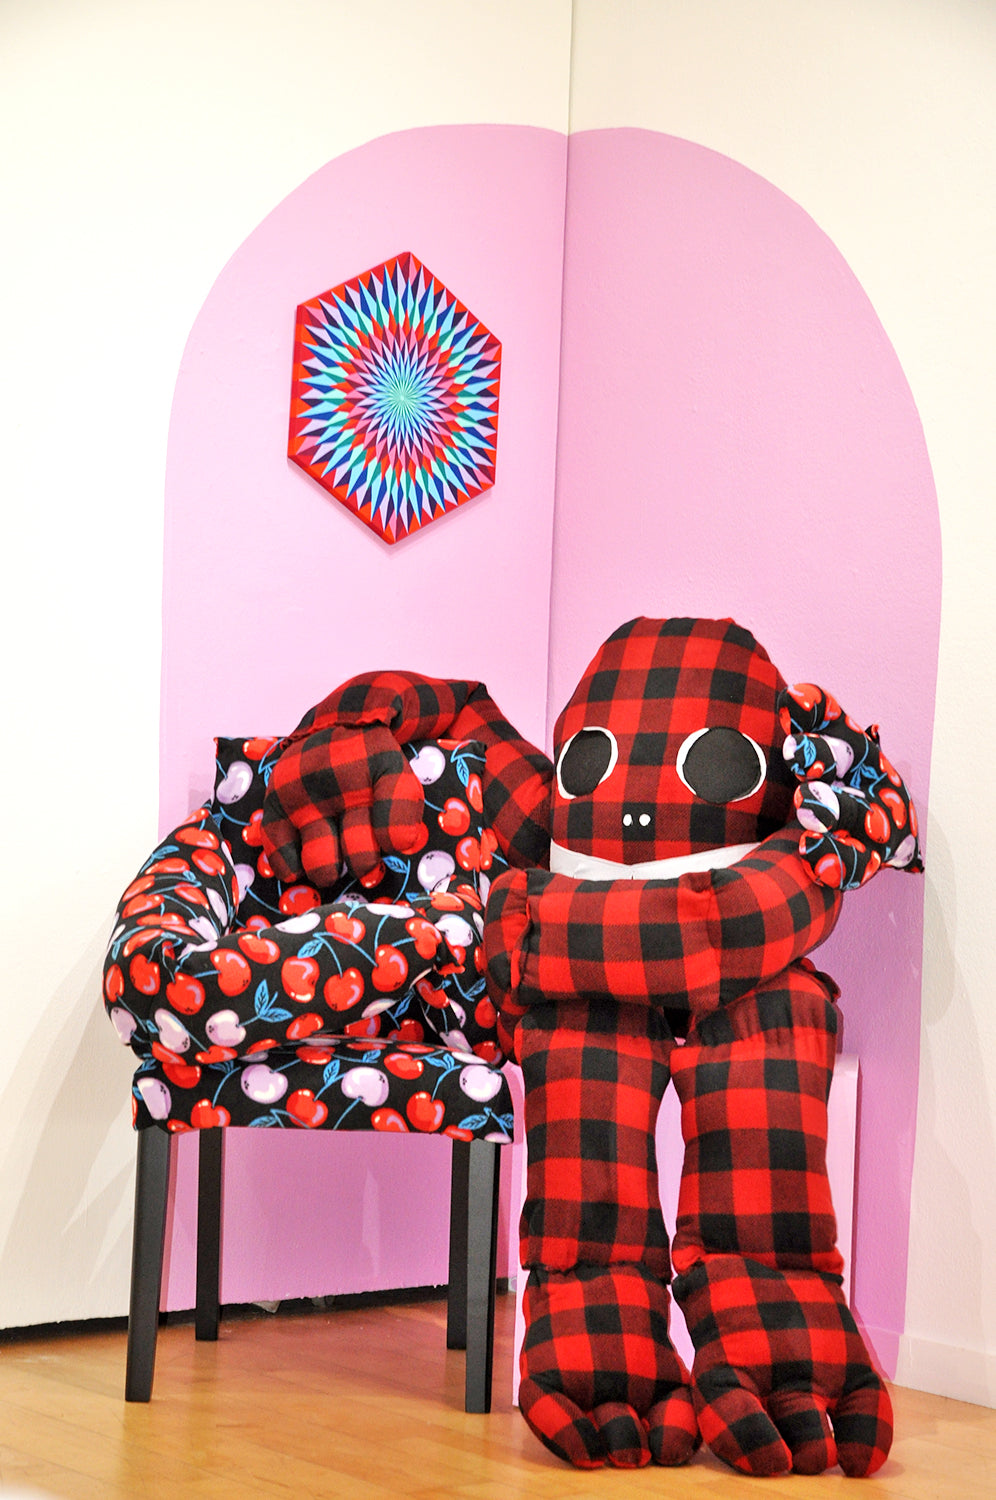 Cherry Hug Chair, Biggie Bigfoot, and Cherry Painting